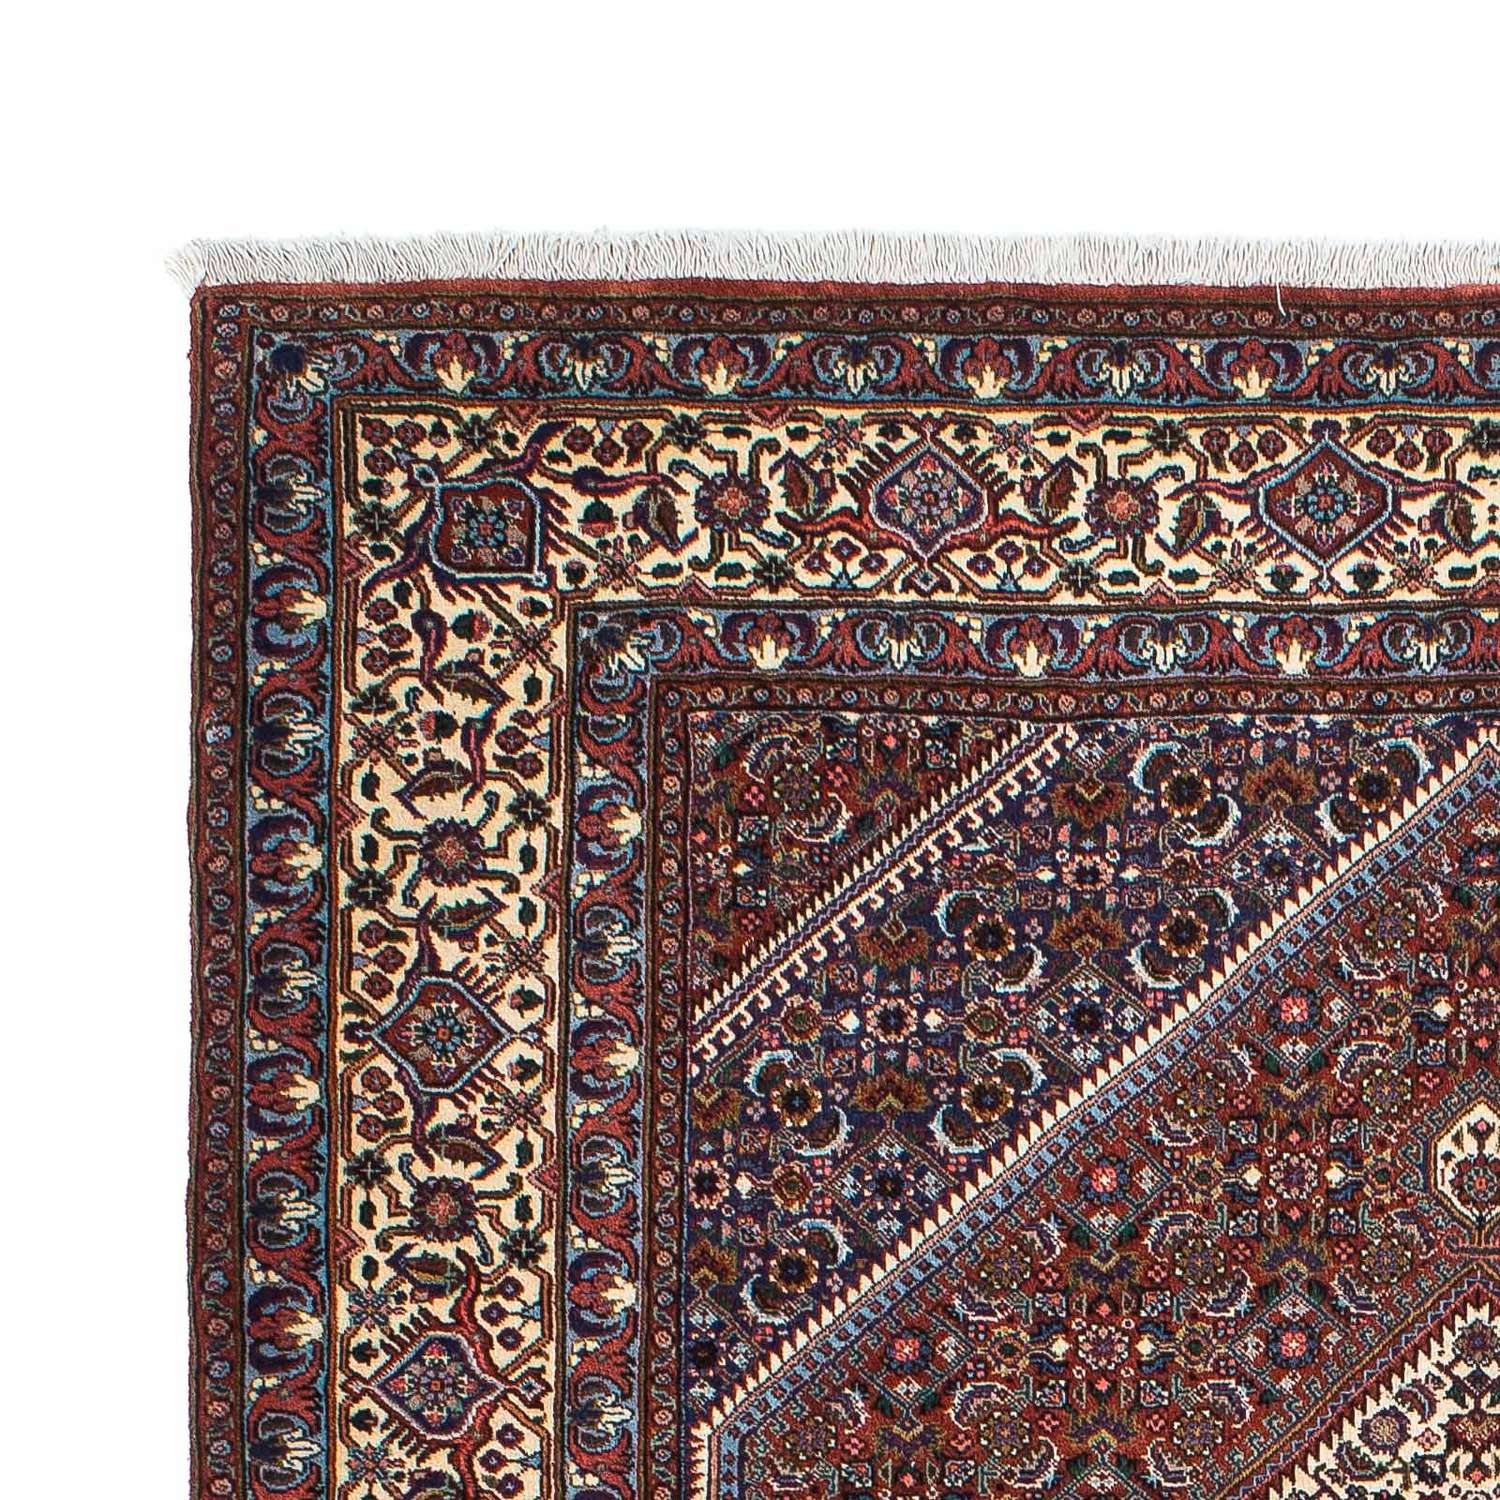 Tapis persan - Bidjar - 197 x 133 cm - multicolore